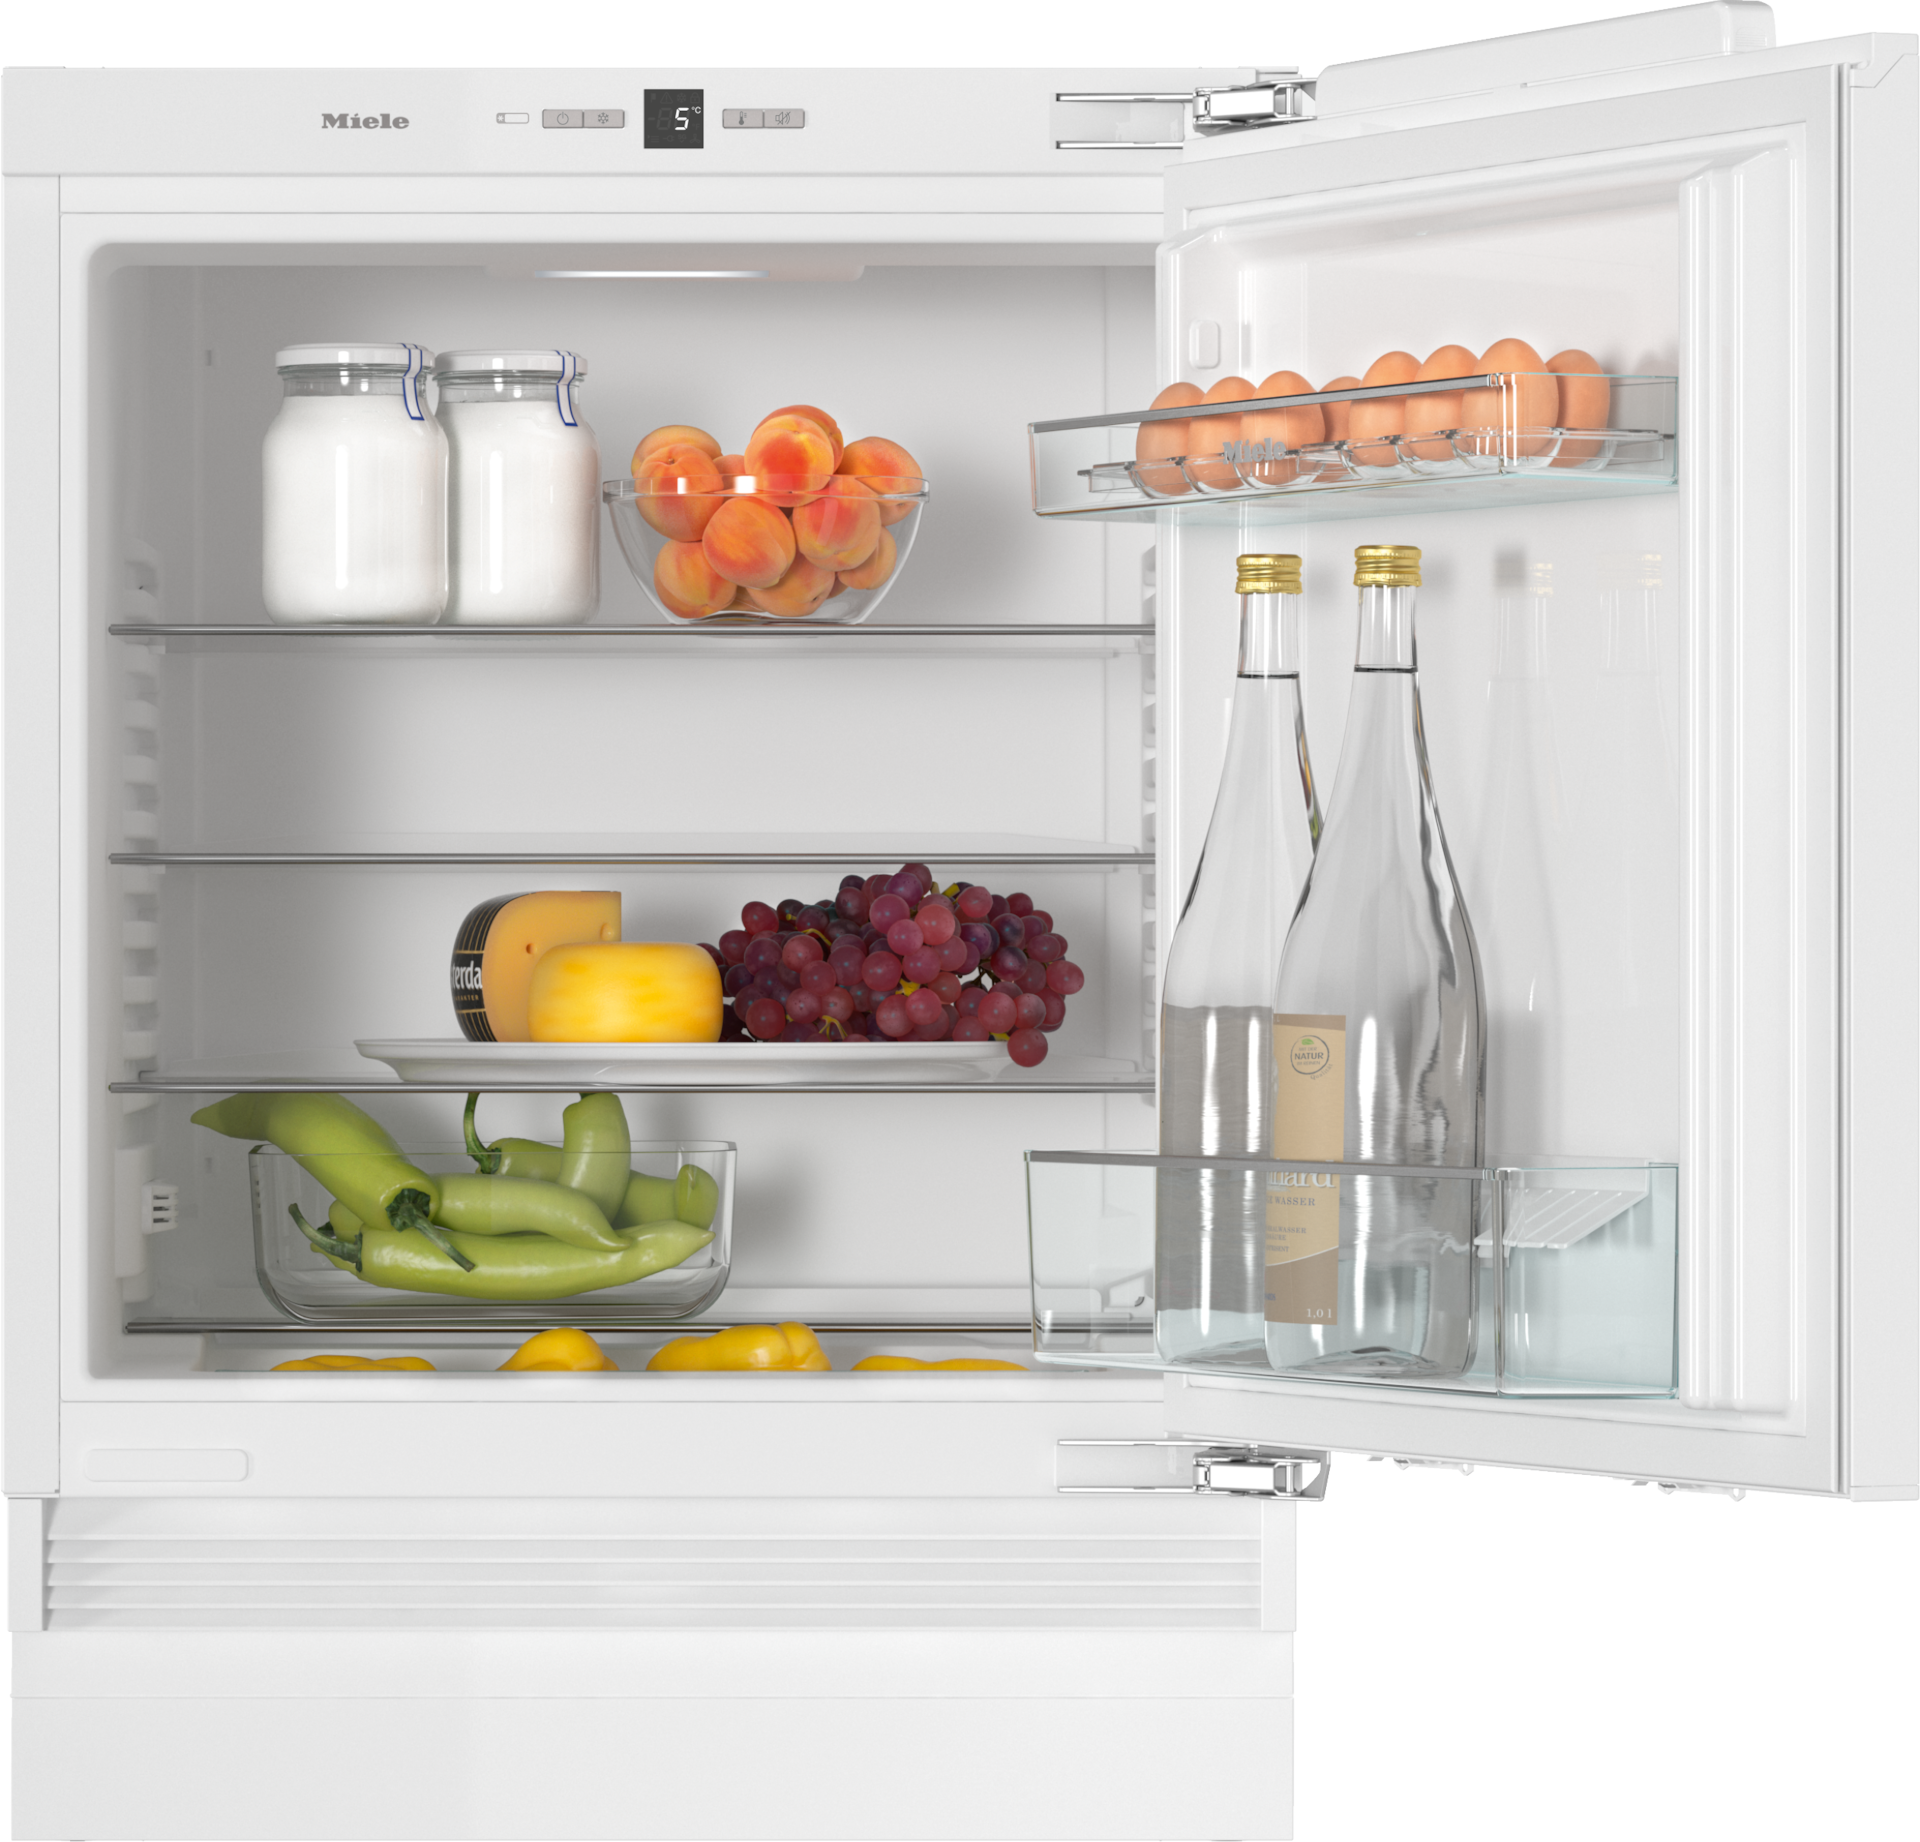 Refrigeration - K 31222 Ui-1 - 1